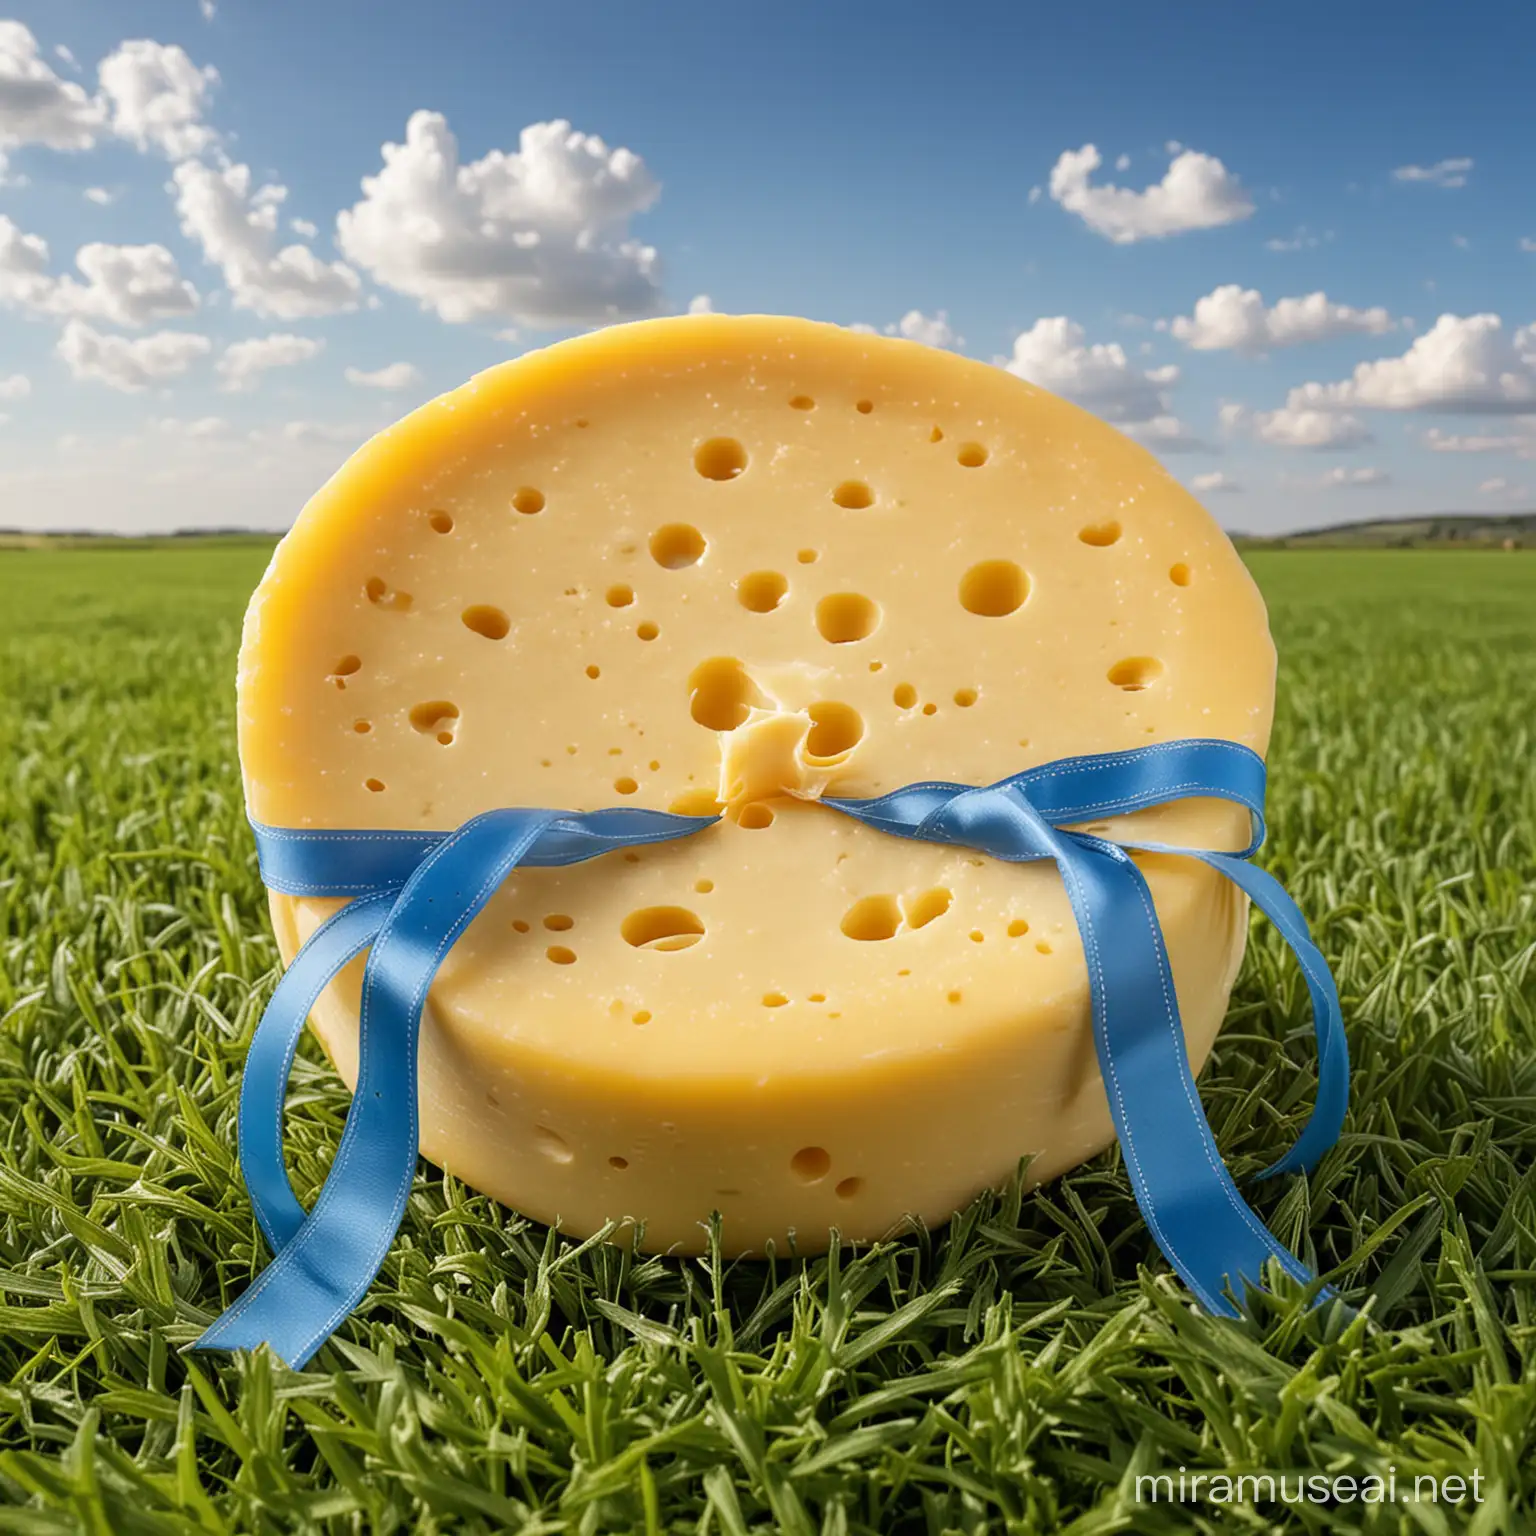 Una deliciosa horma redonda de queso amarillo con agujeros, con un moño de color azul, envuelto como un regalo, apoyado sobre un fondo de verde campo y cielo celeste.